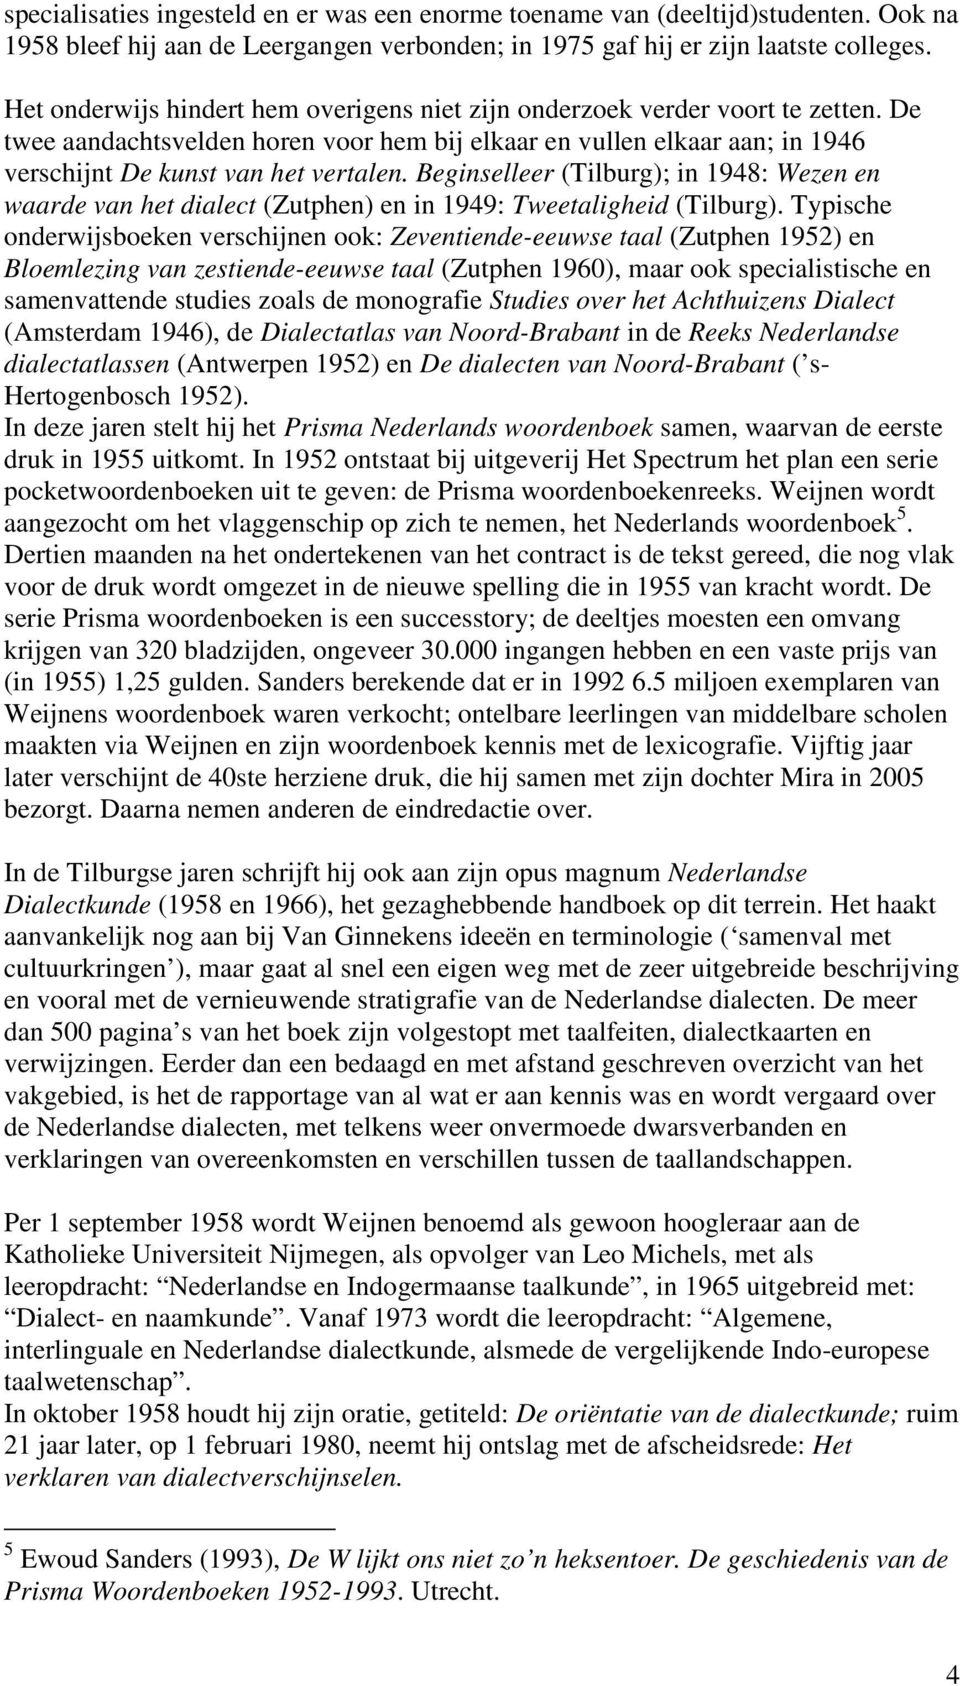 Beginselleer (Tilburg); in 1948: Wezen en waarde van het dialect (Zutphen) en in 1949: Tweetaligheid (Tilburg).